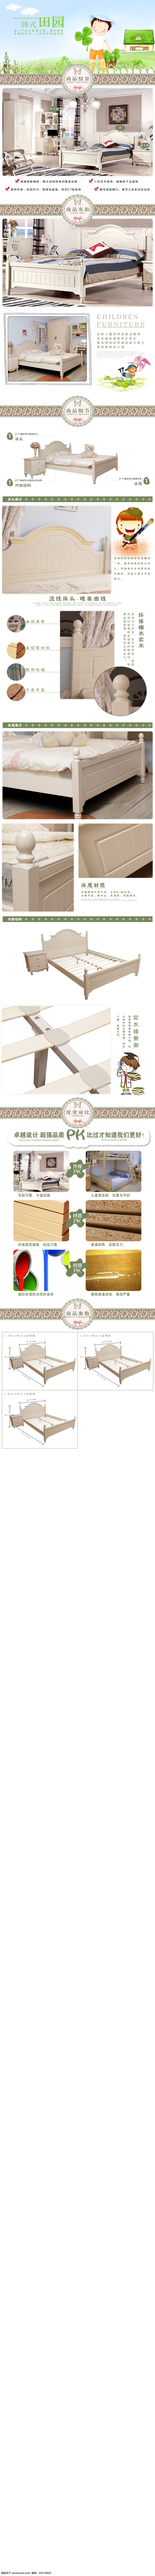 韩式 田园 儿童 床 淘宝模板下载 淘宝设计 淘宝素材 原创设计 原创淘宝设计